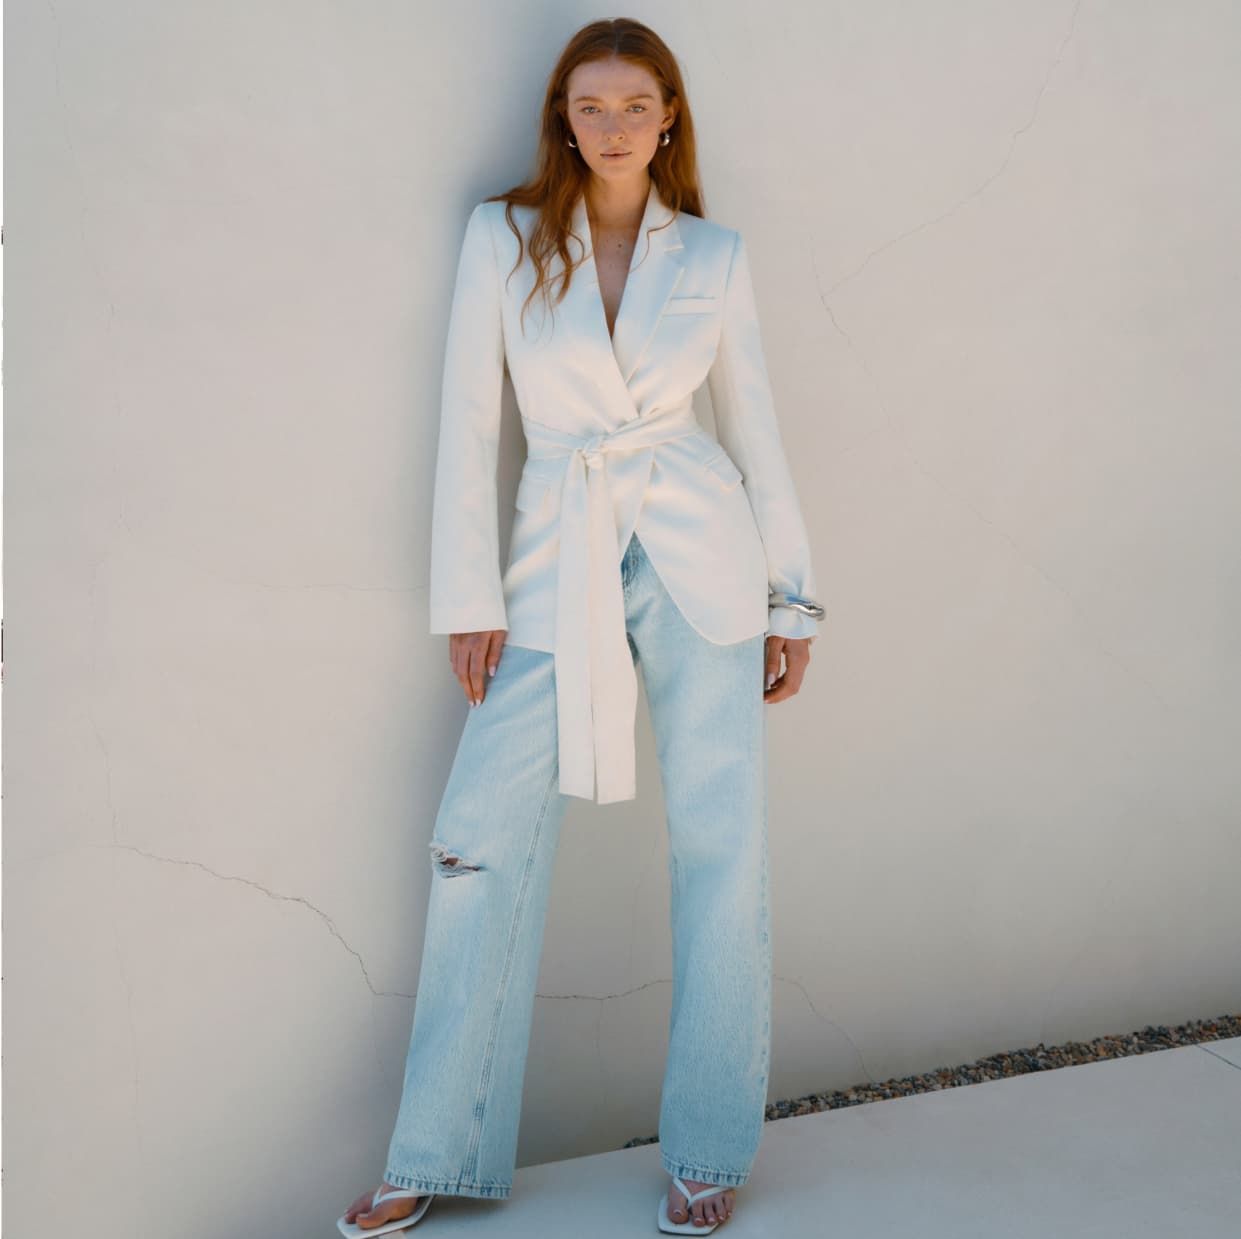 Une mannequin porte un veston blanc à ceinture avec un jean bleu pâle.